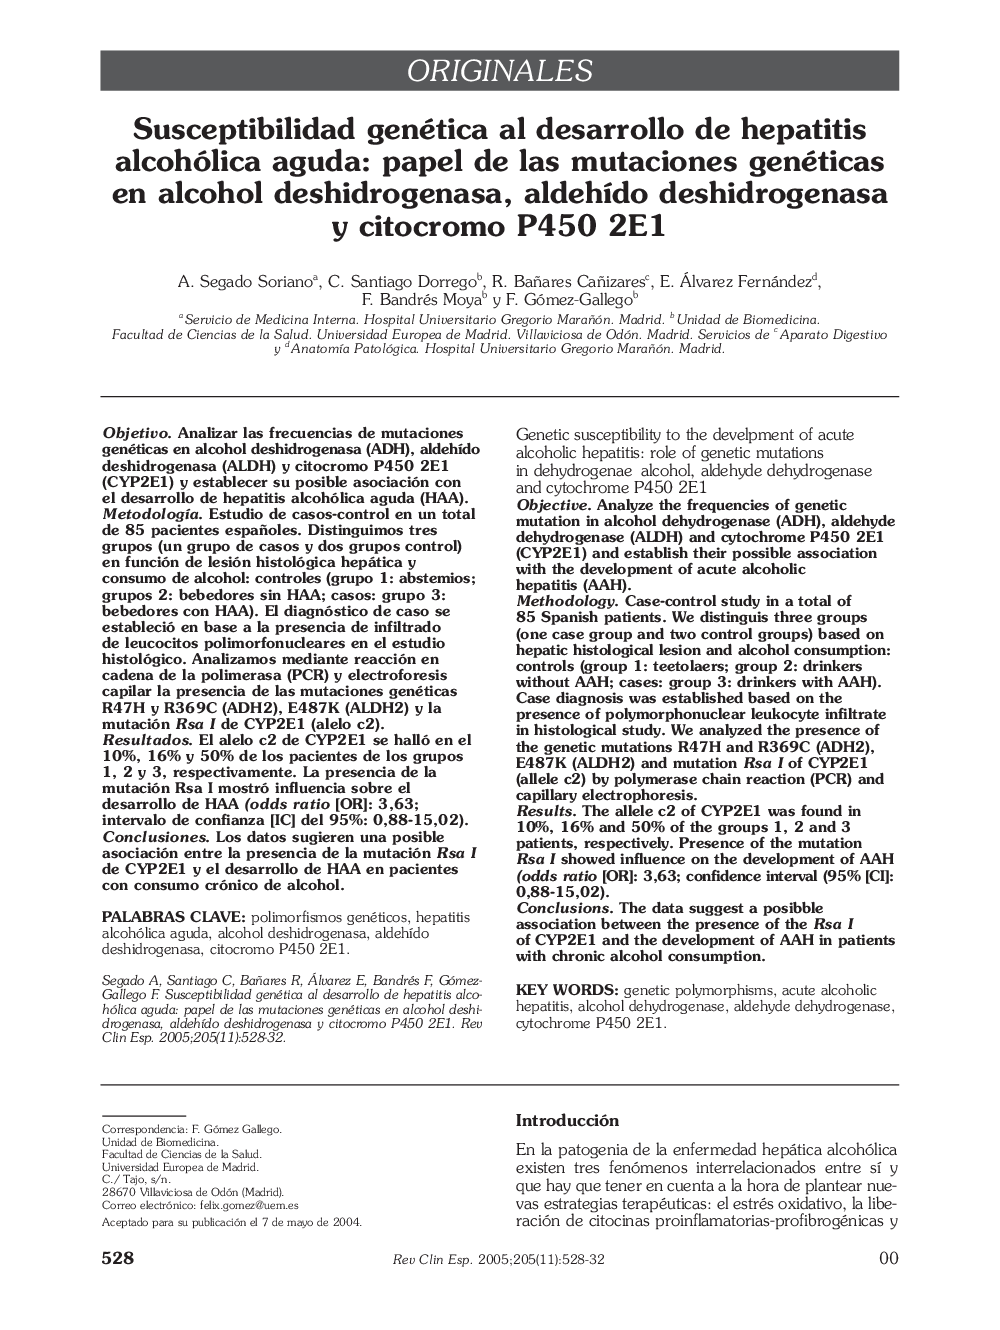 Susceptibilidad genética al desarrollo de hepatitis alcohólica aguda: papel de las mutaciones genéticas en alcohol deshidrogenasa, aldehÃ­do deshidrogenasa y citocromo P450 2E1